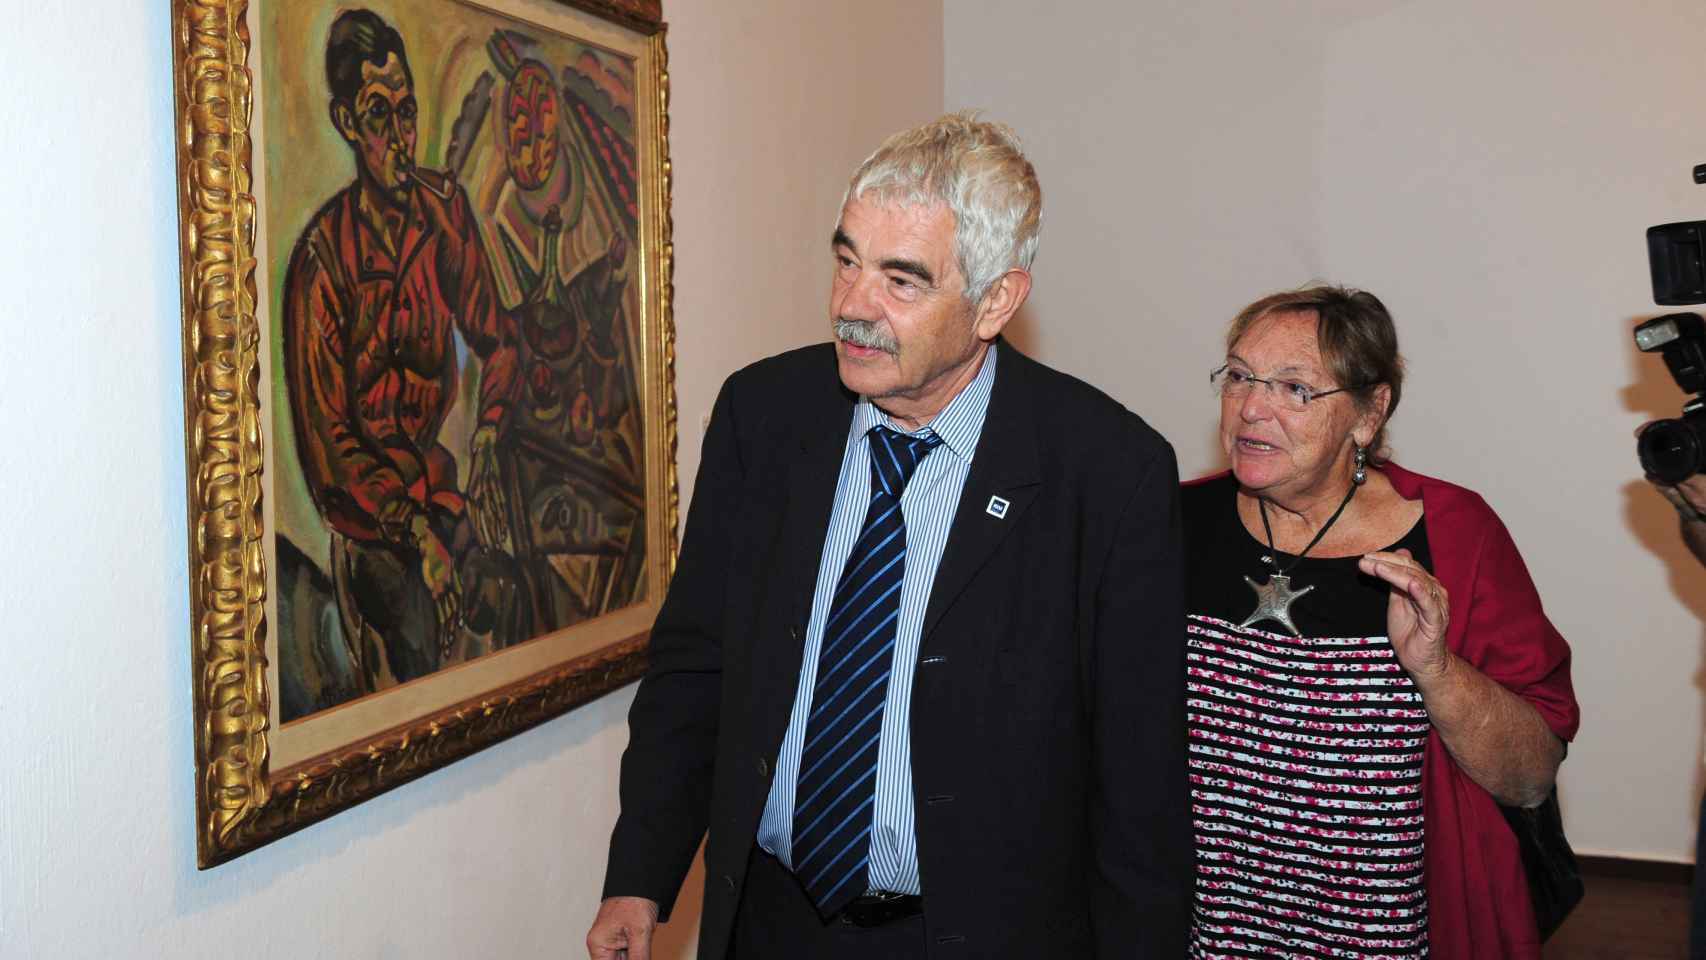 El ex alcalde y su mujer, Diana Garrigosa, en una exposición de Joan Miró en 2011